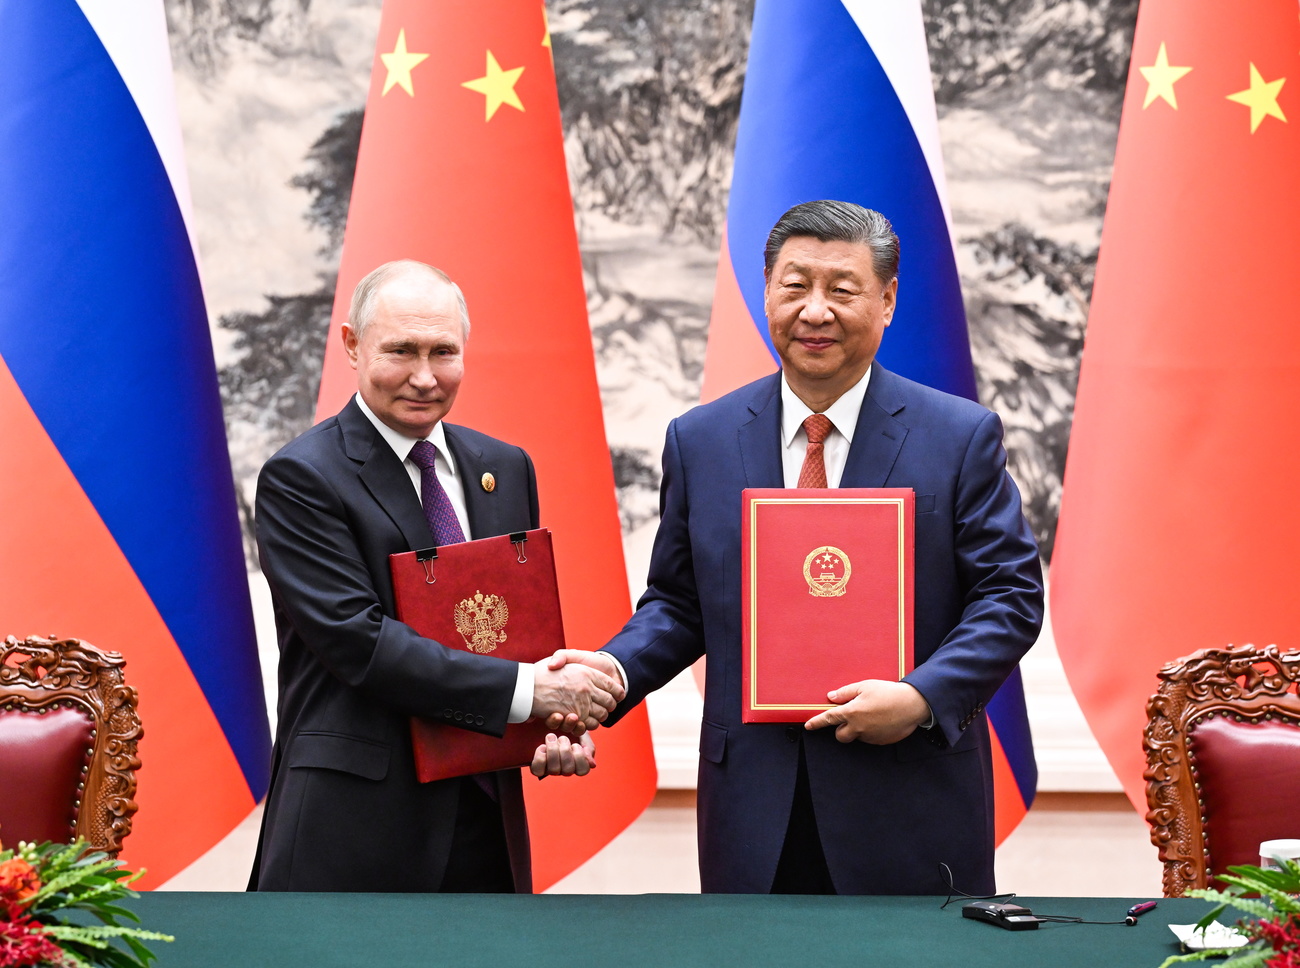 プーチン氏は5月に習近平氏を公式訪問。中国との関係を深めるための文書に署名した